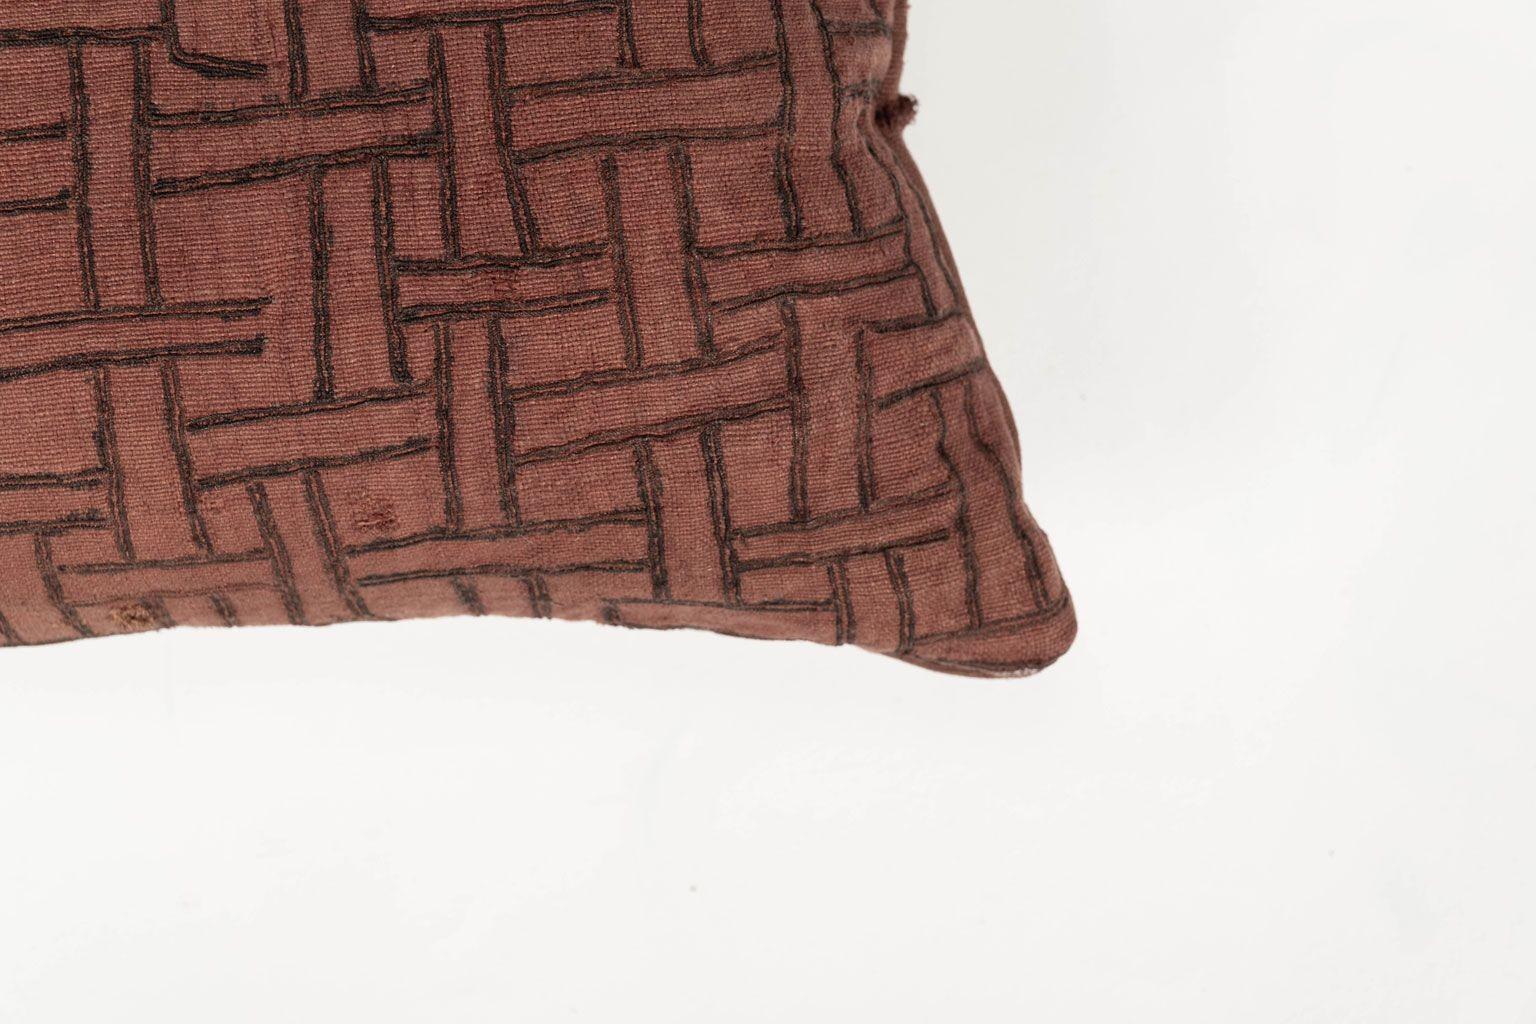 Coussin lombaire brodé de couleur prune délavée, fabriqué à partir d'un ancien textile tribal en coton tissé et teint à la main (vers 1930-1954). Cousu à la main, il constitue un magnifique oreiller à dos libre, avec fermeture éclair et garniture en